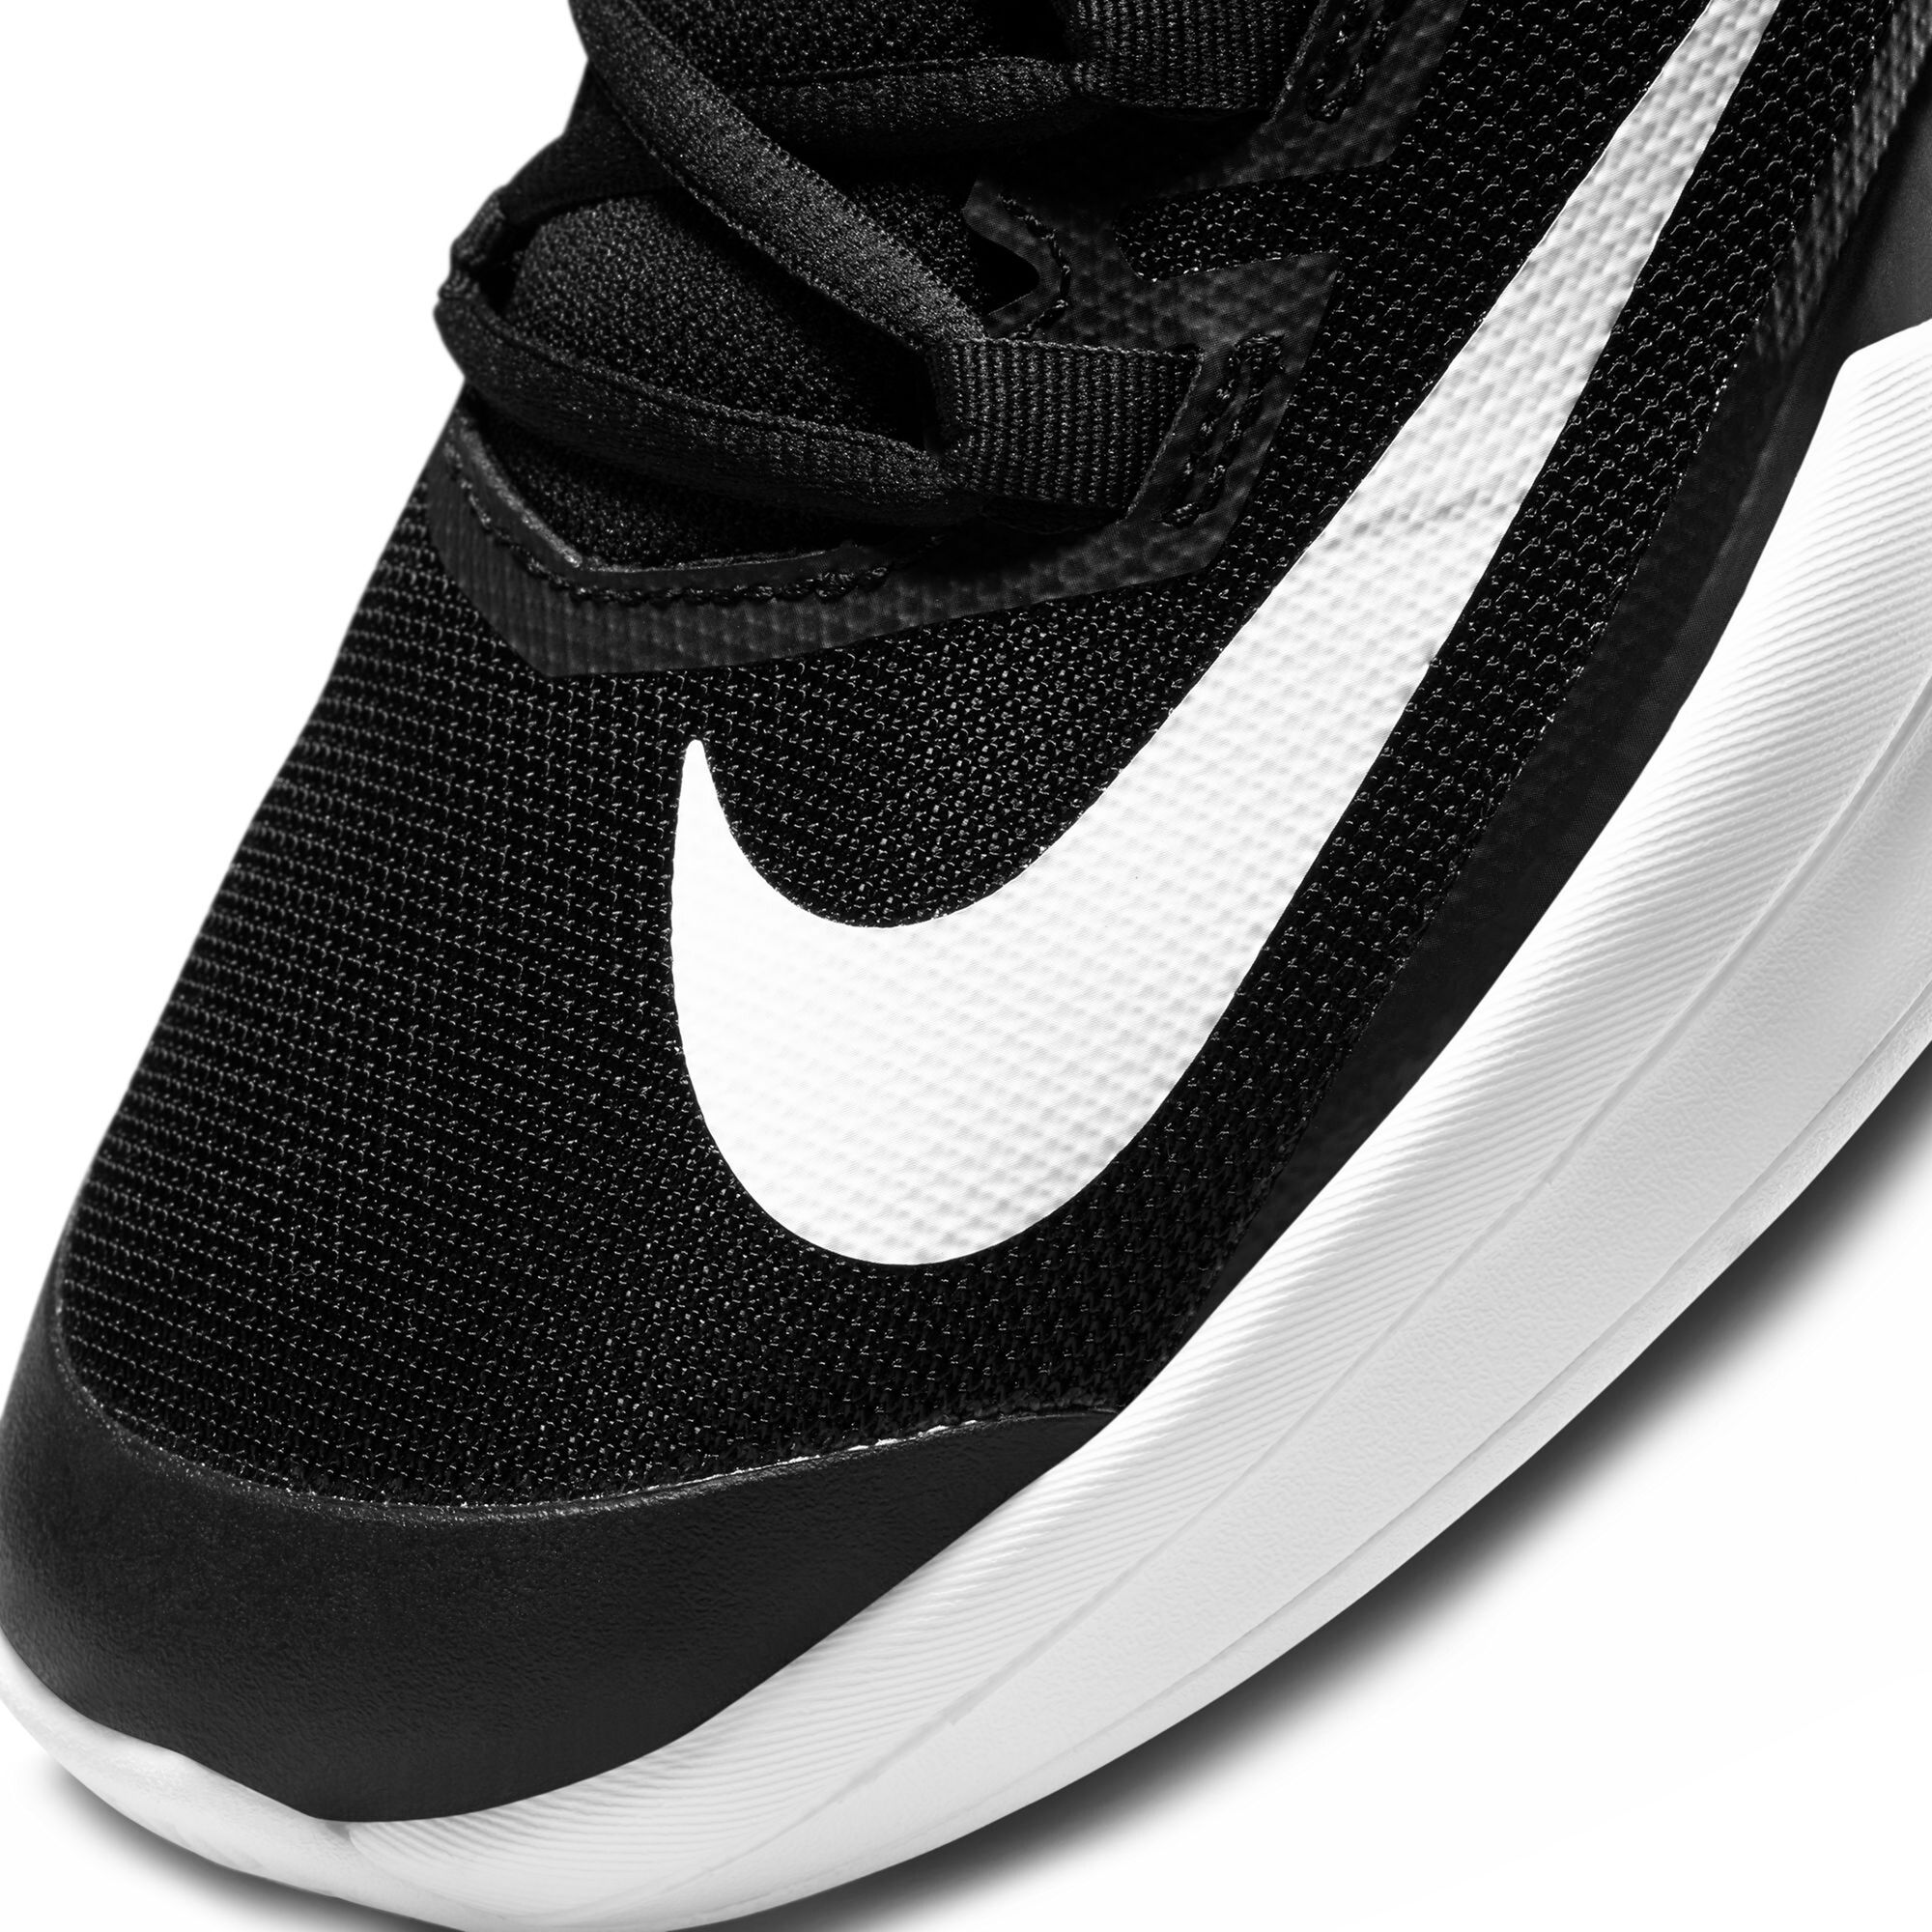 Muslo Verdulero bolita Nike Court Vapor Lite All Court Shoe Men - Black, White online | Padel-Point